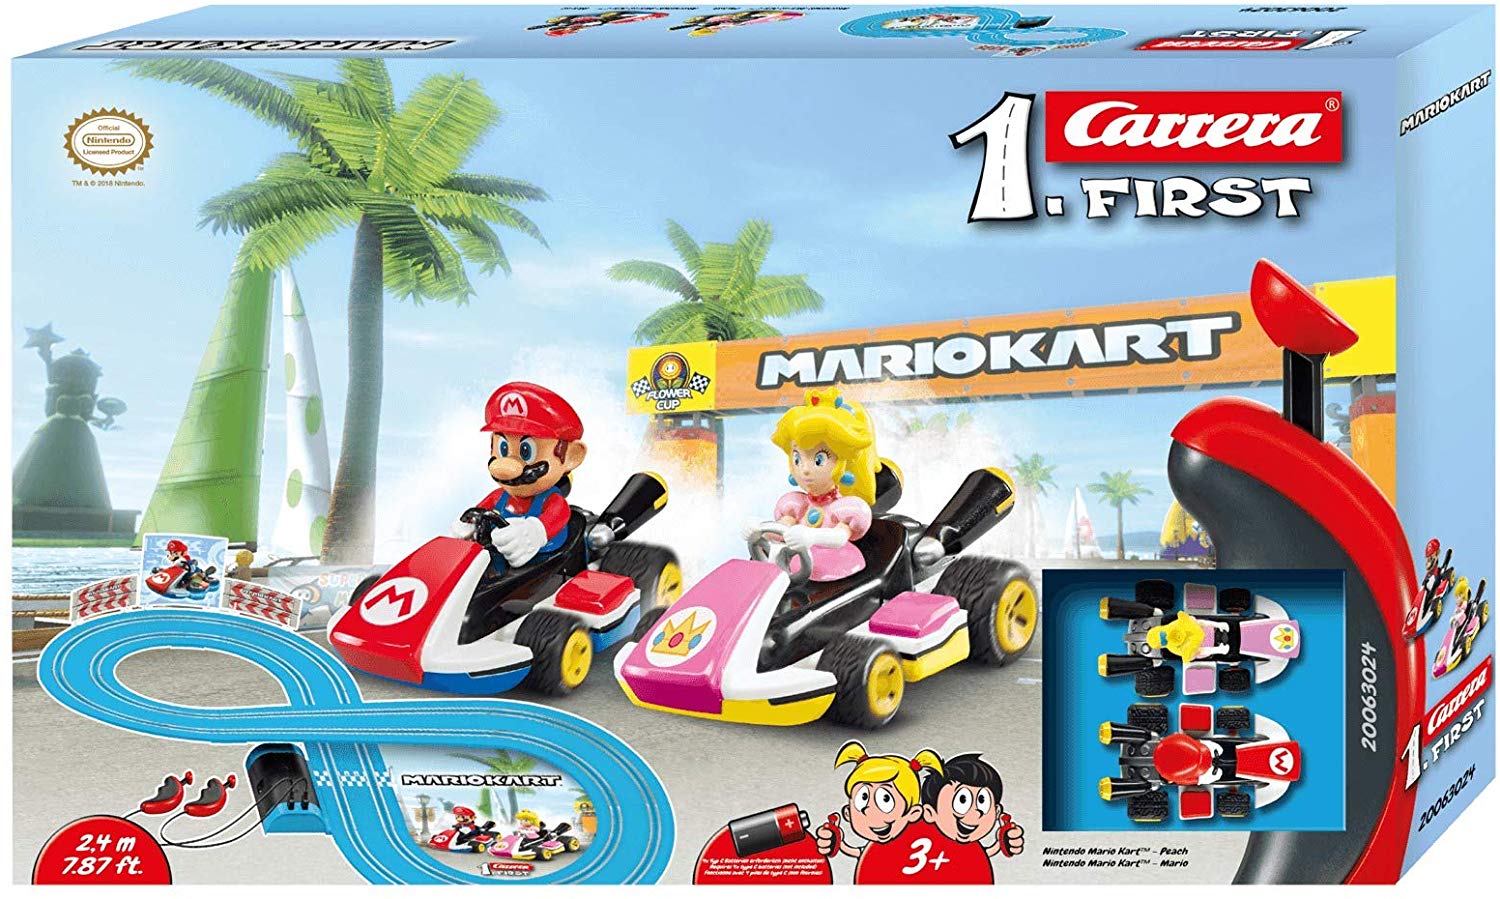 Circuito de Coches en Miniatura Mario Kart solo 23,6€